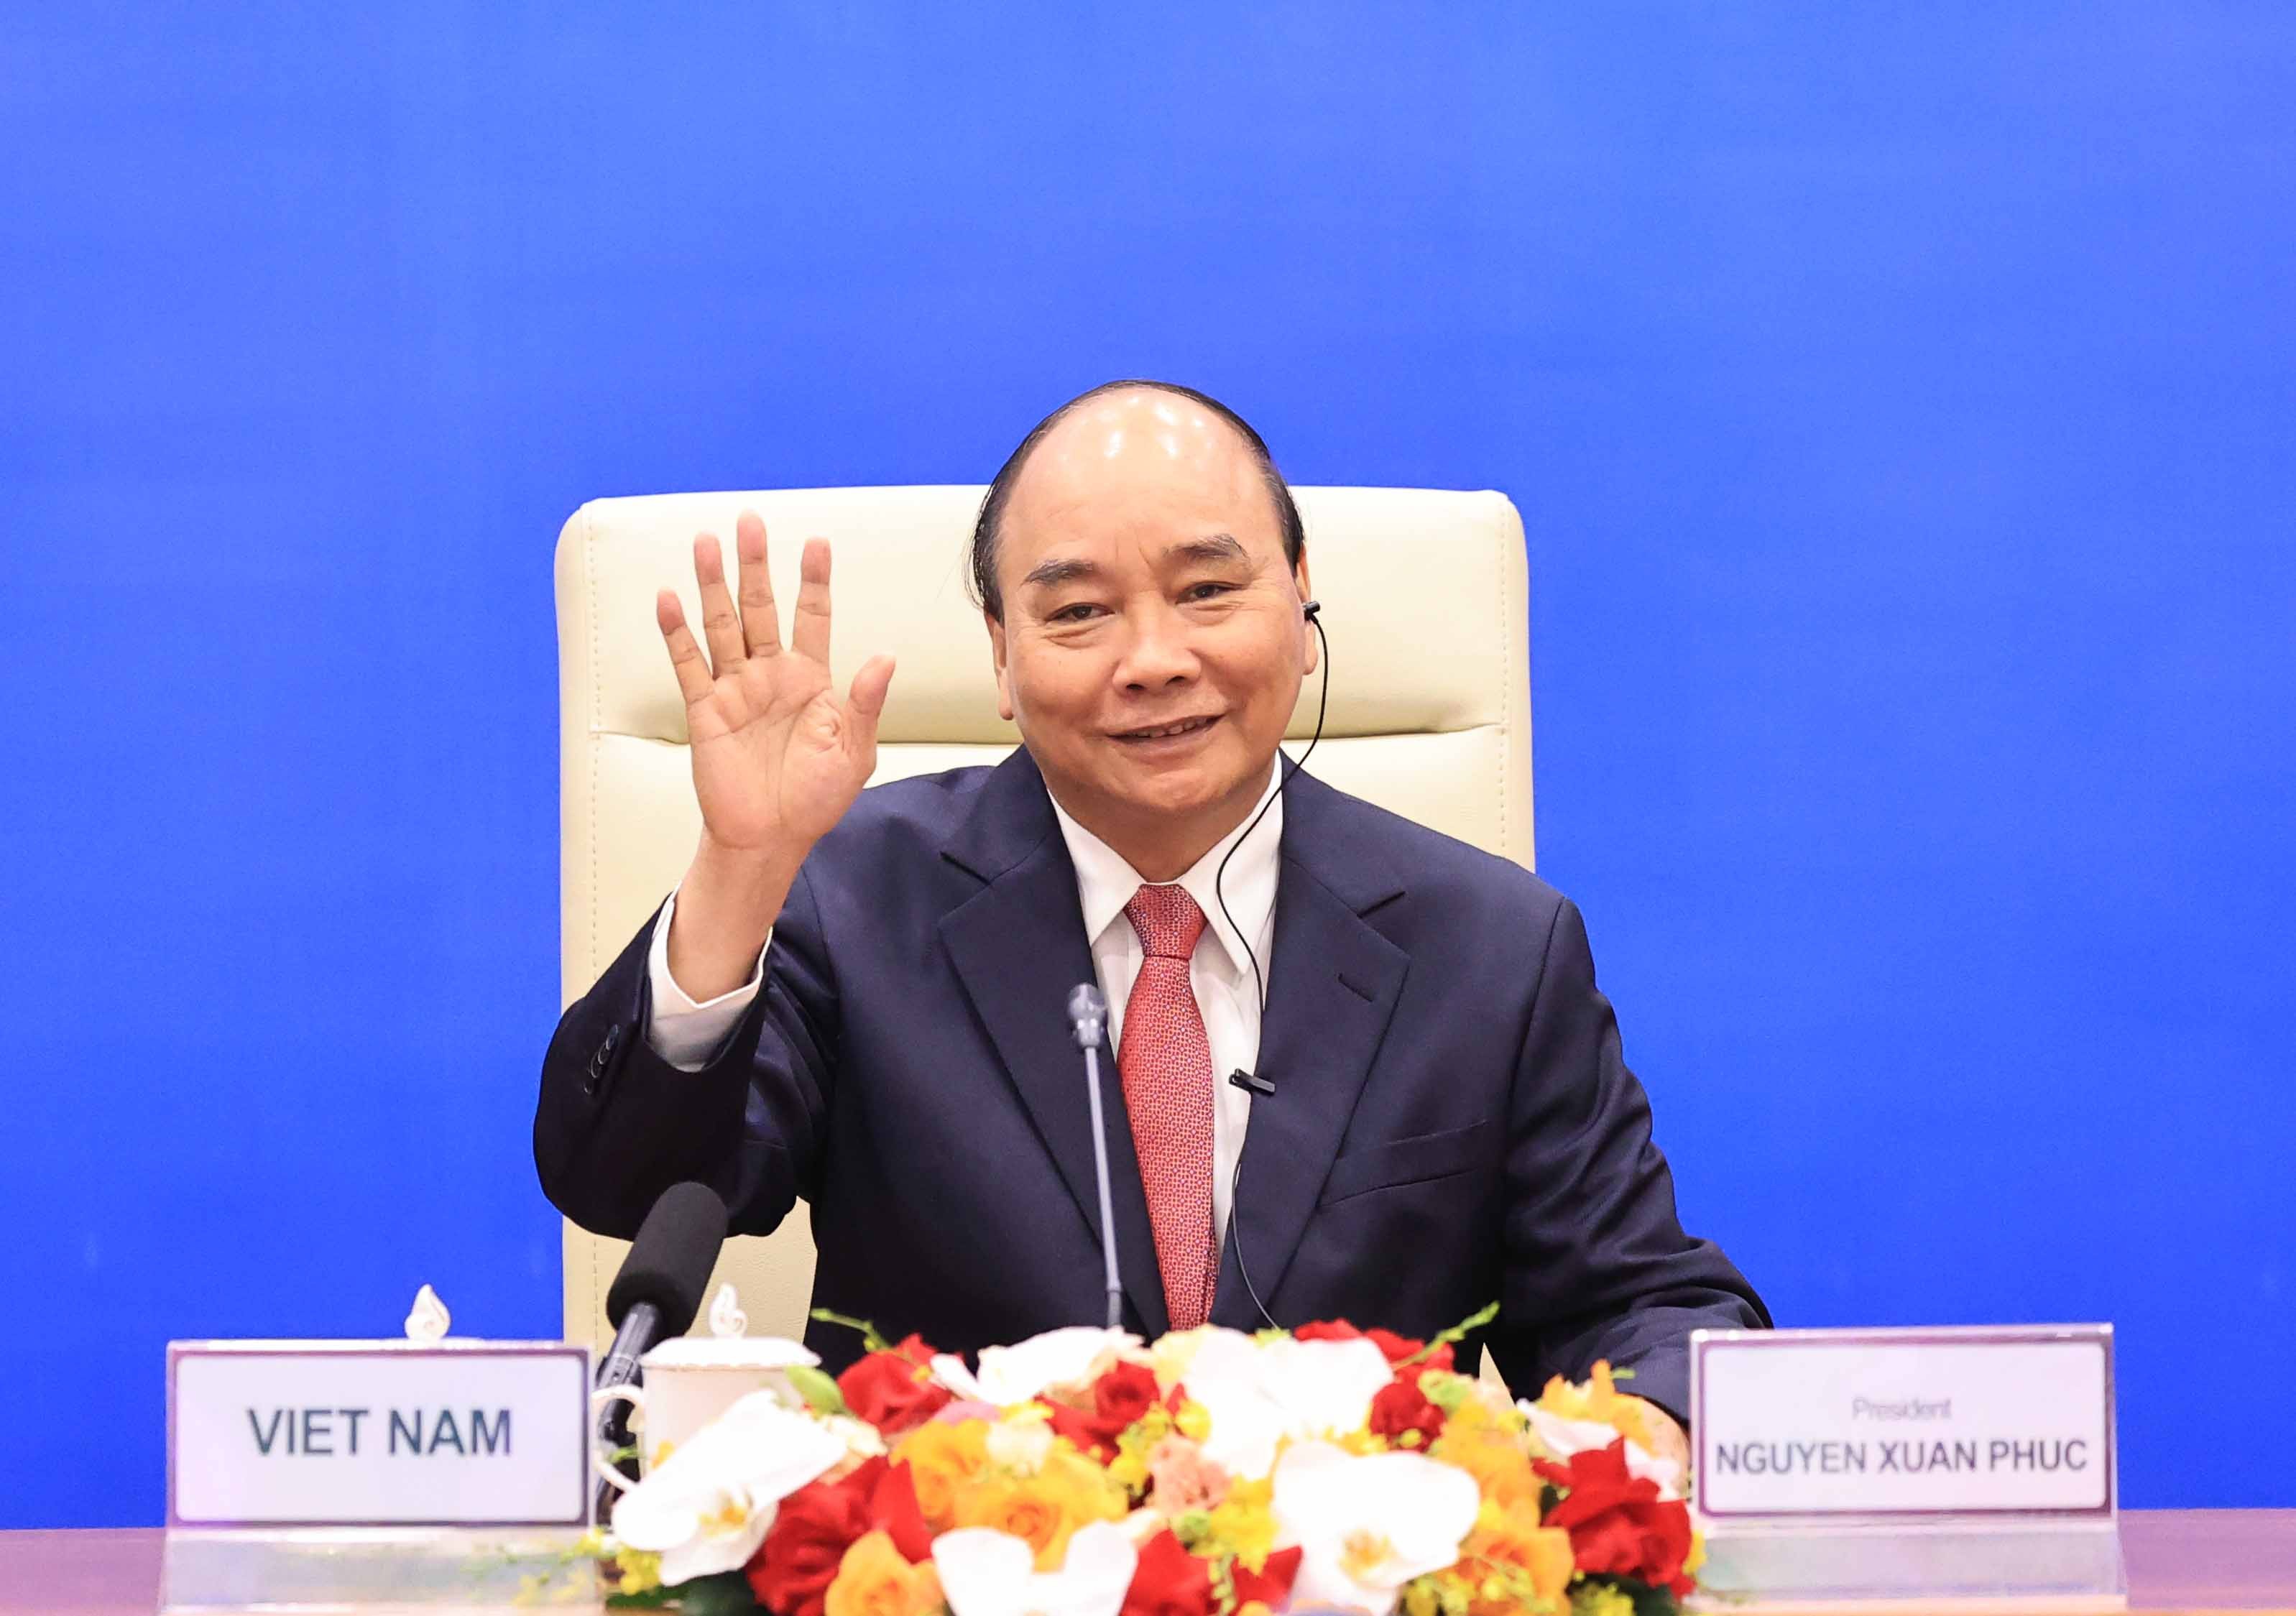 Chủ tịch nước Nguyễn Xuân Phúc tham dự cuộc họp không chính thức các nhà lãnh đạo kinh tế APEC.